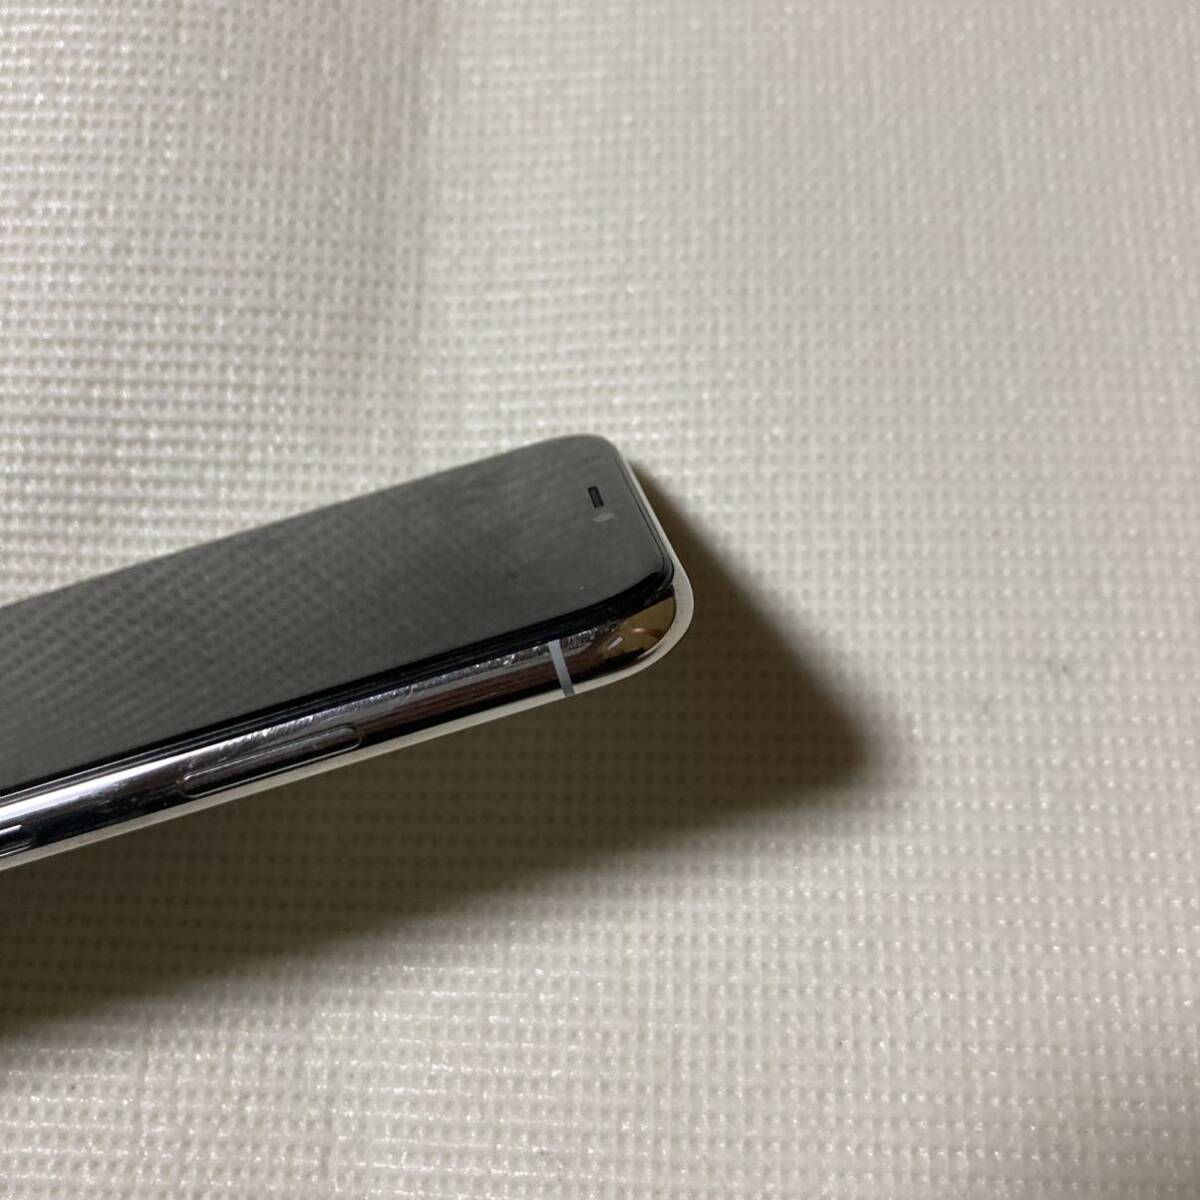 送料無料 SIMフリー iPhoneX 64GB シルバー バッテリー最大容量100% SIMロック解除済 中古品の画像5